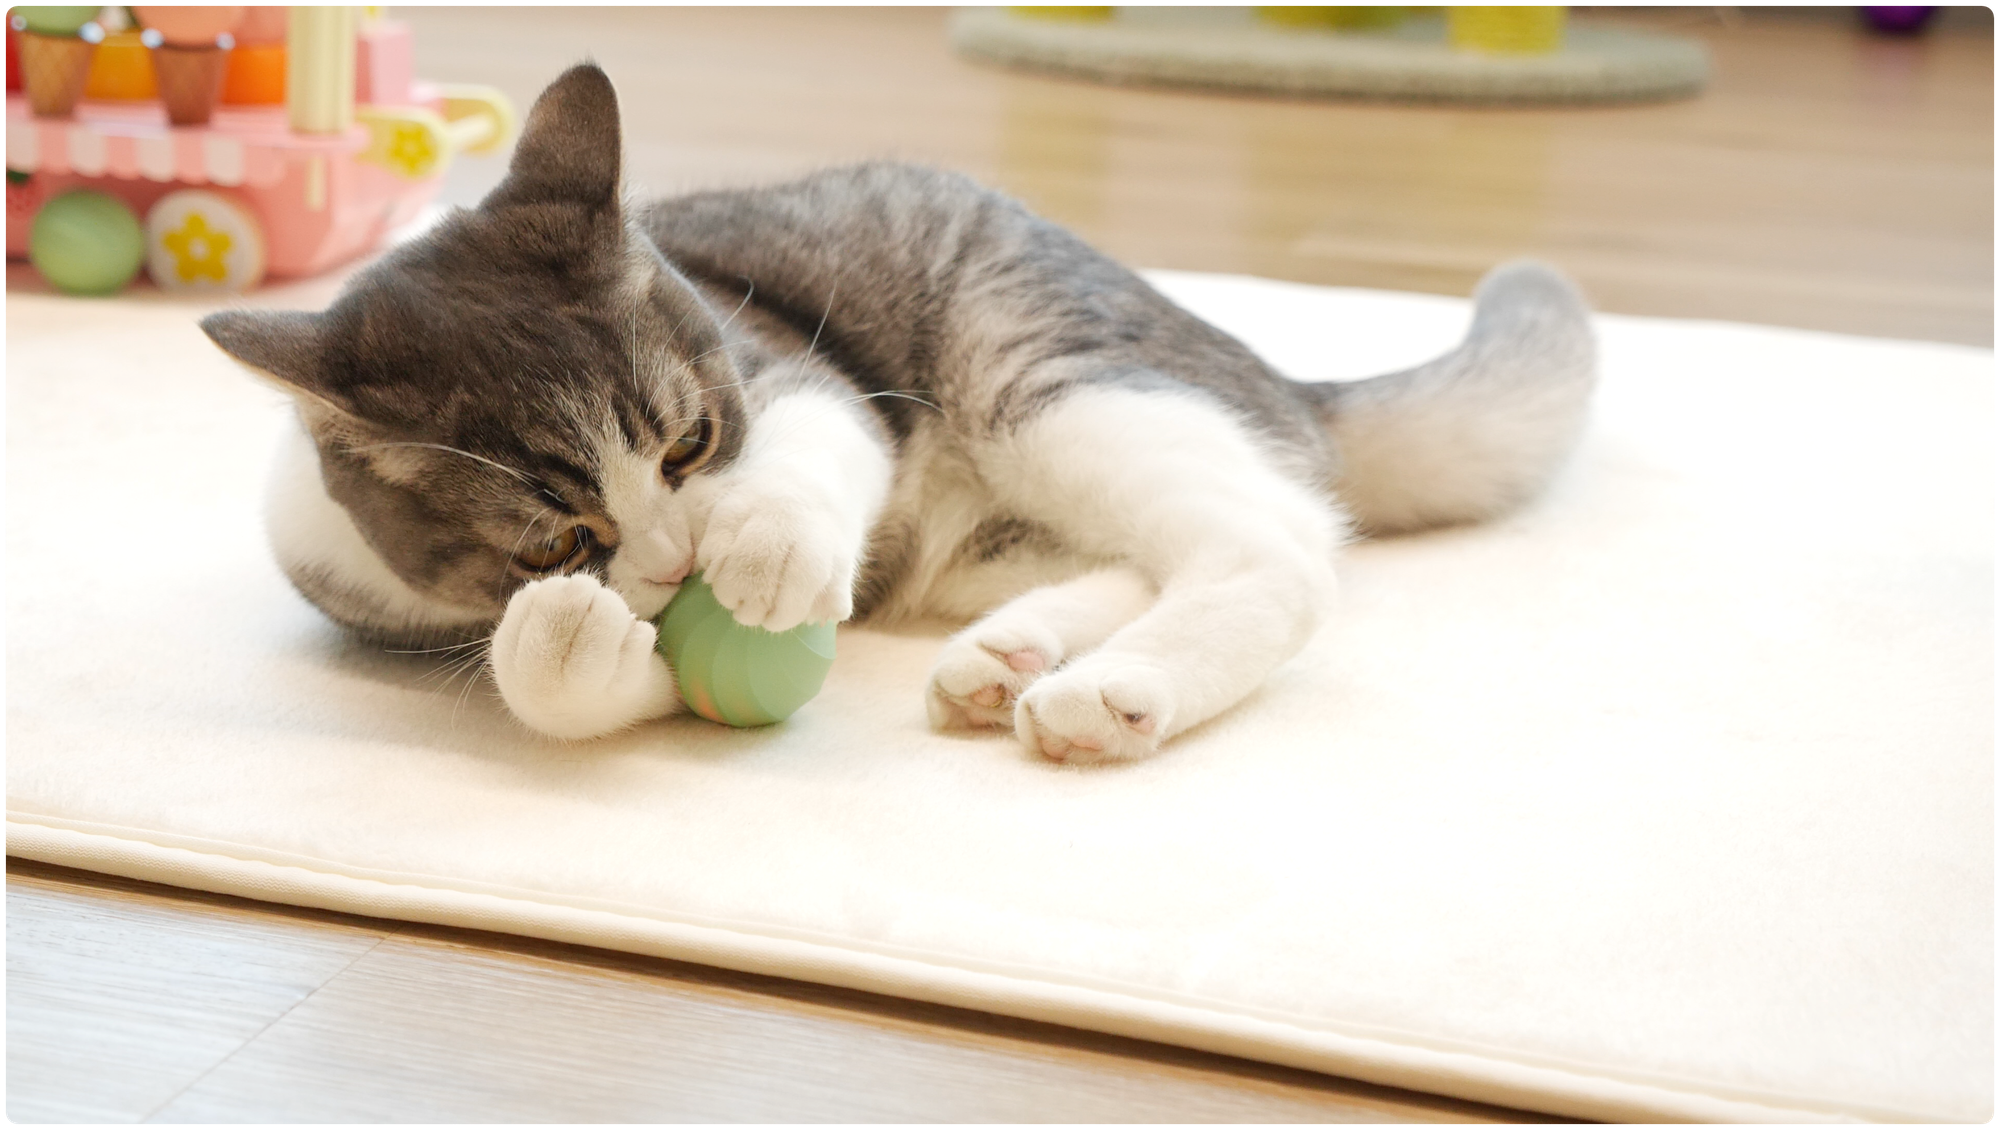 Cheerble Ice Cream интерактивная игрушка мячик для кошки и котят, развивающая игрушка для кота, умный шарик, USB зарядка - фотография № 10